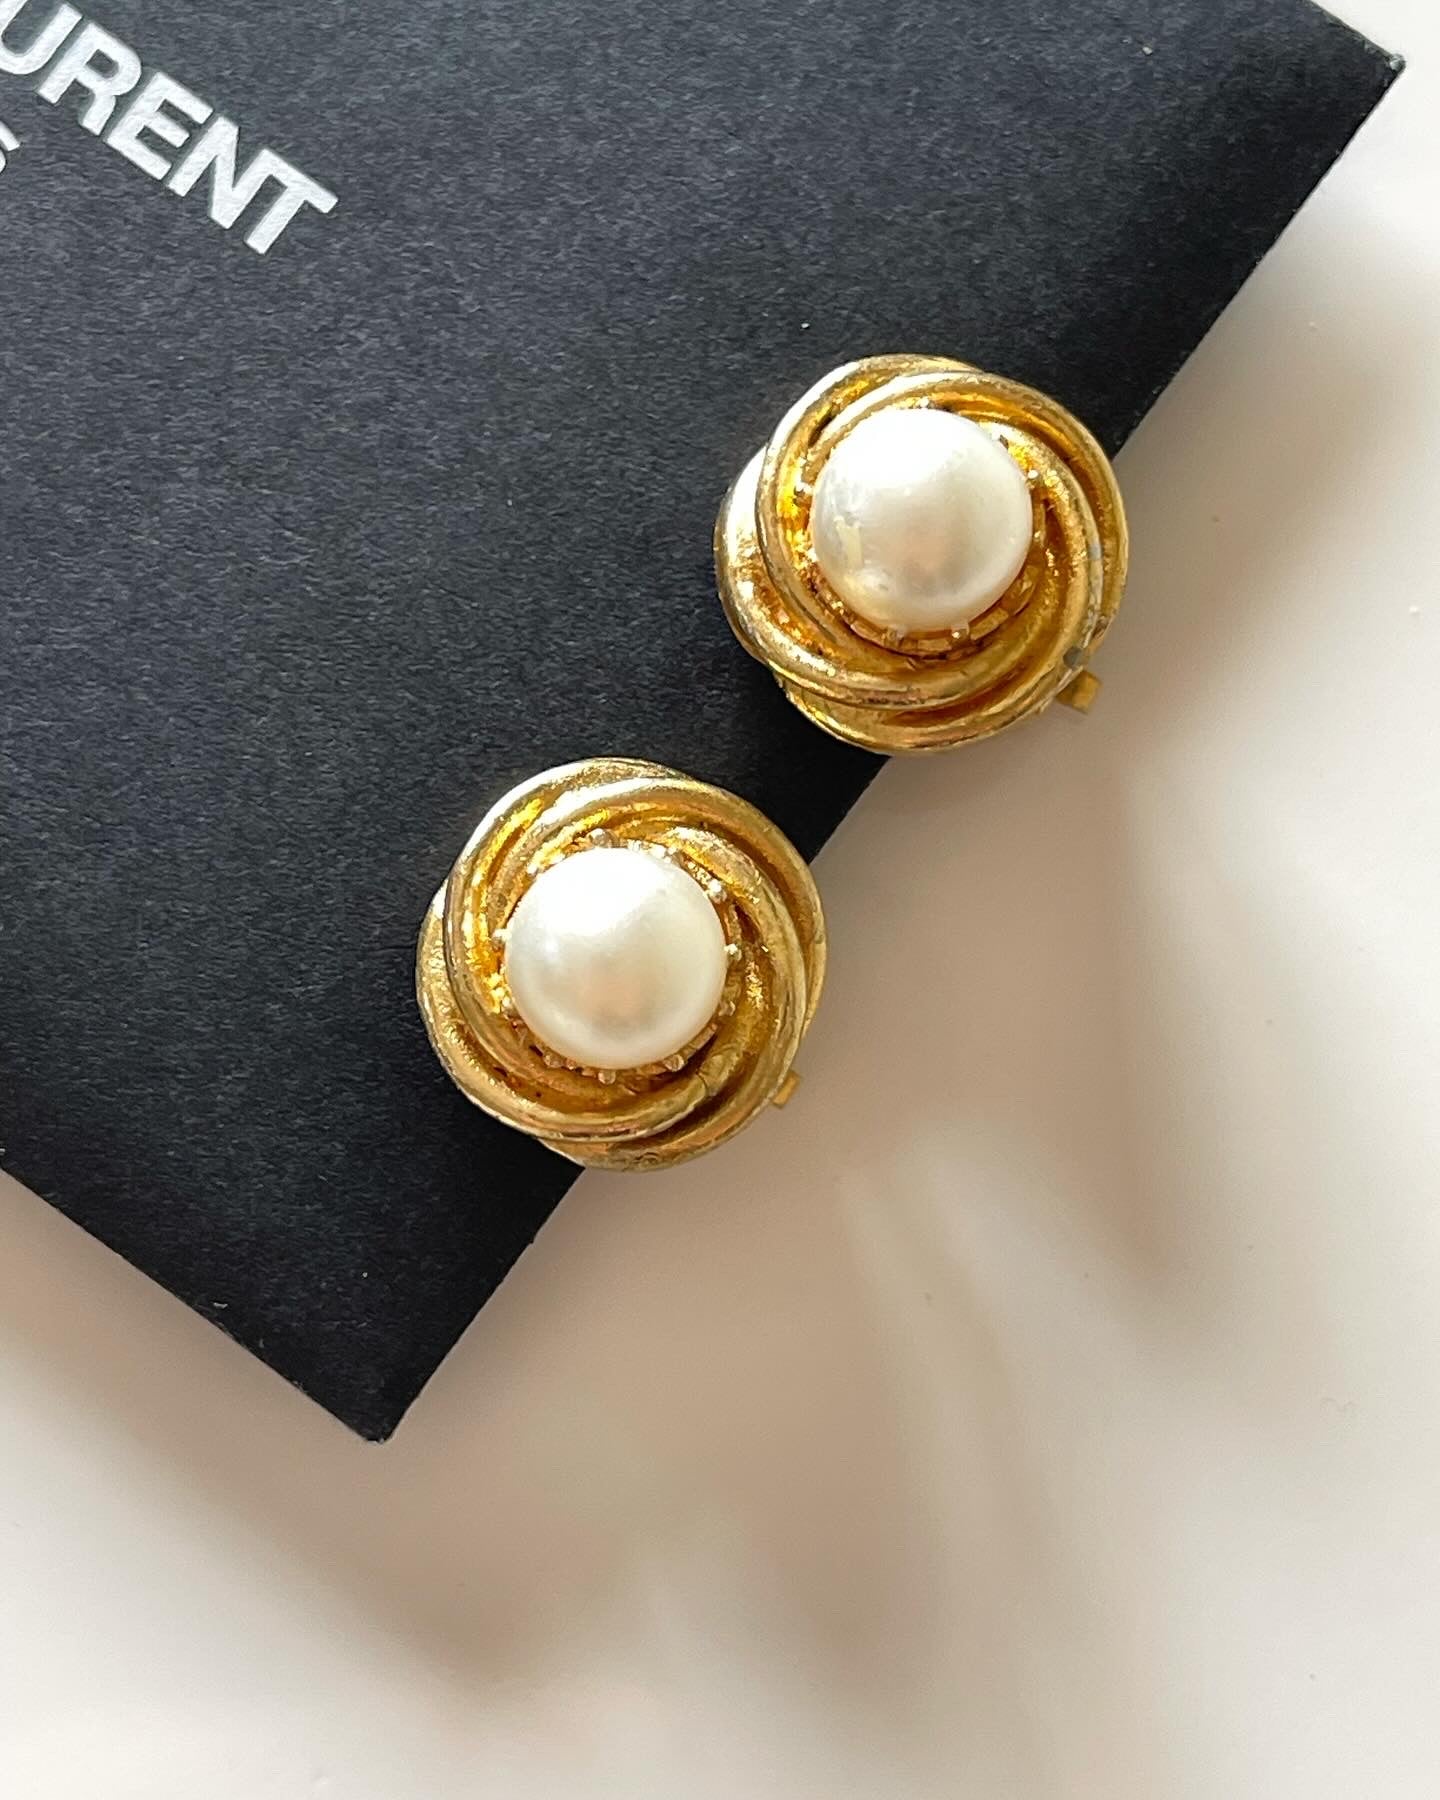 Lovely vintage faux pearl clip-on earrings